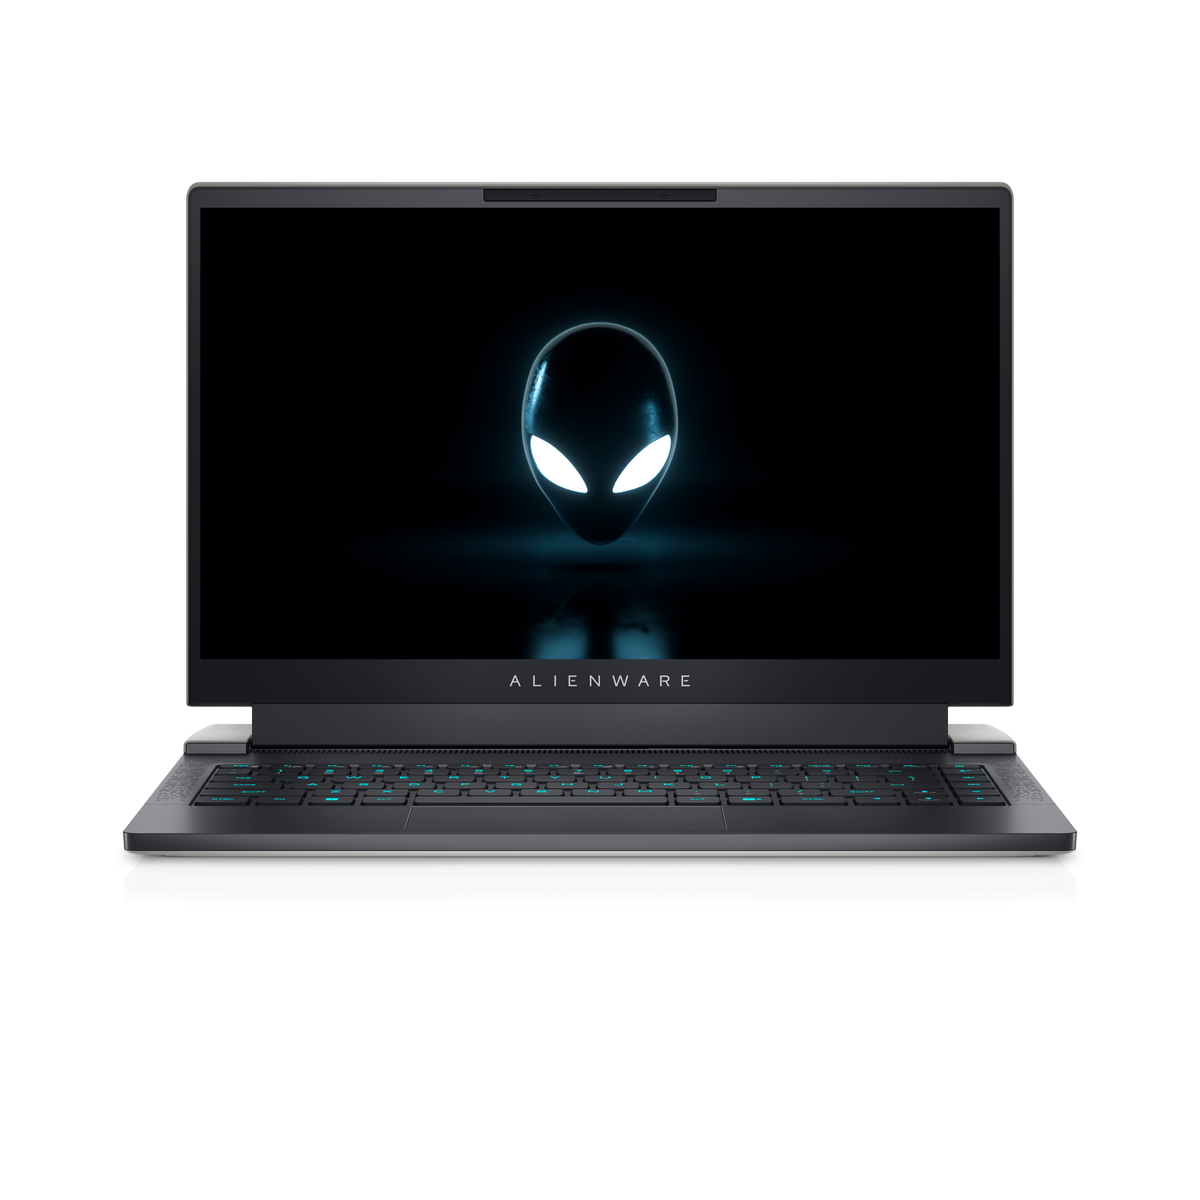 Alienware X14 Komputer Riba Gaming Padat, Berkuasa Dengan Spesifikasi Dan Rekaan Yang Sangat Menarik